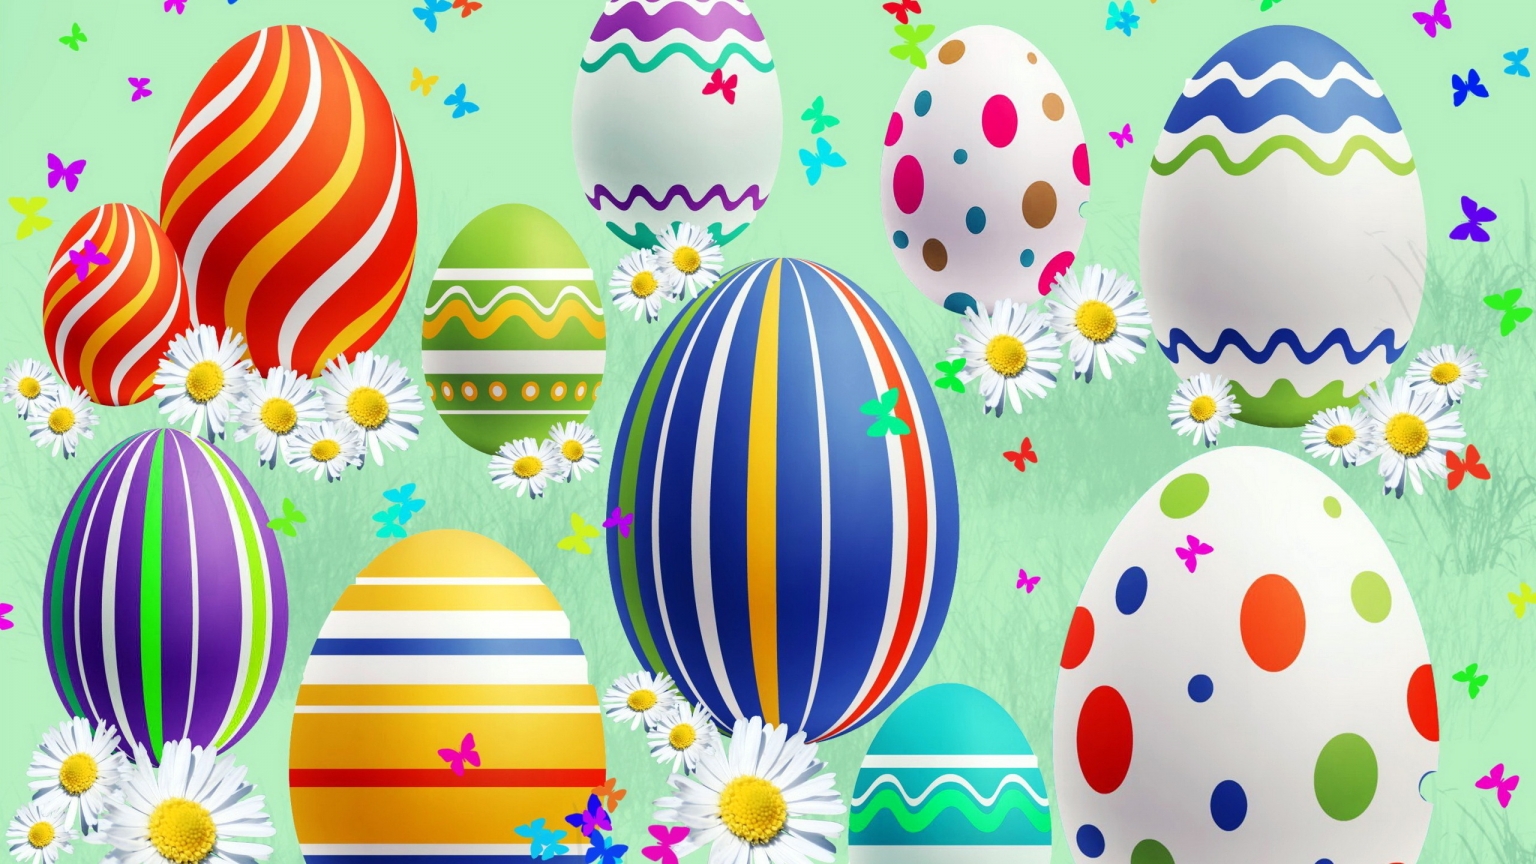 Lovely Easter Eggs for 1536 x 864 HDTV resolution